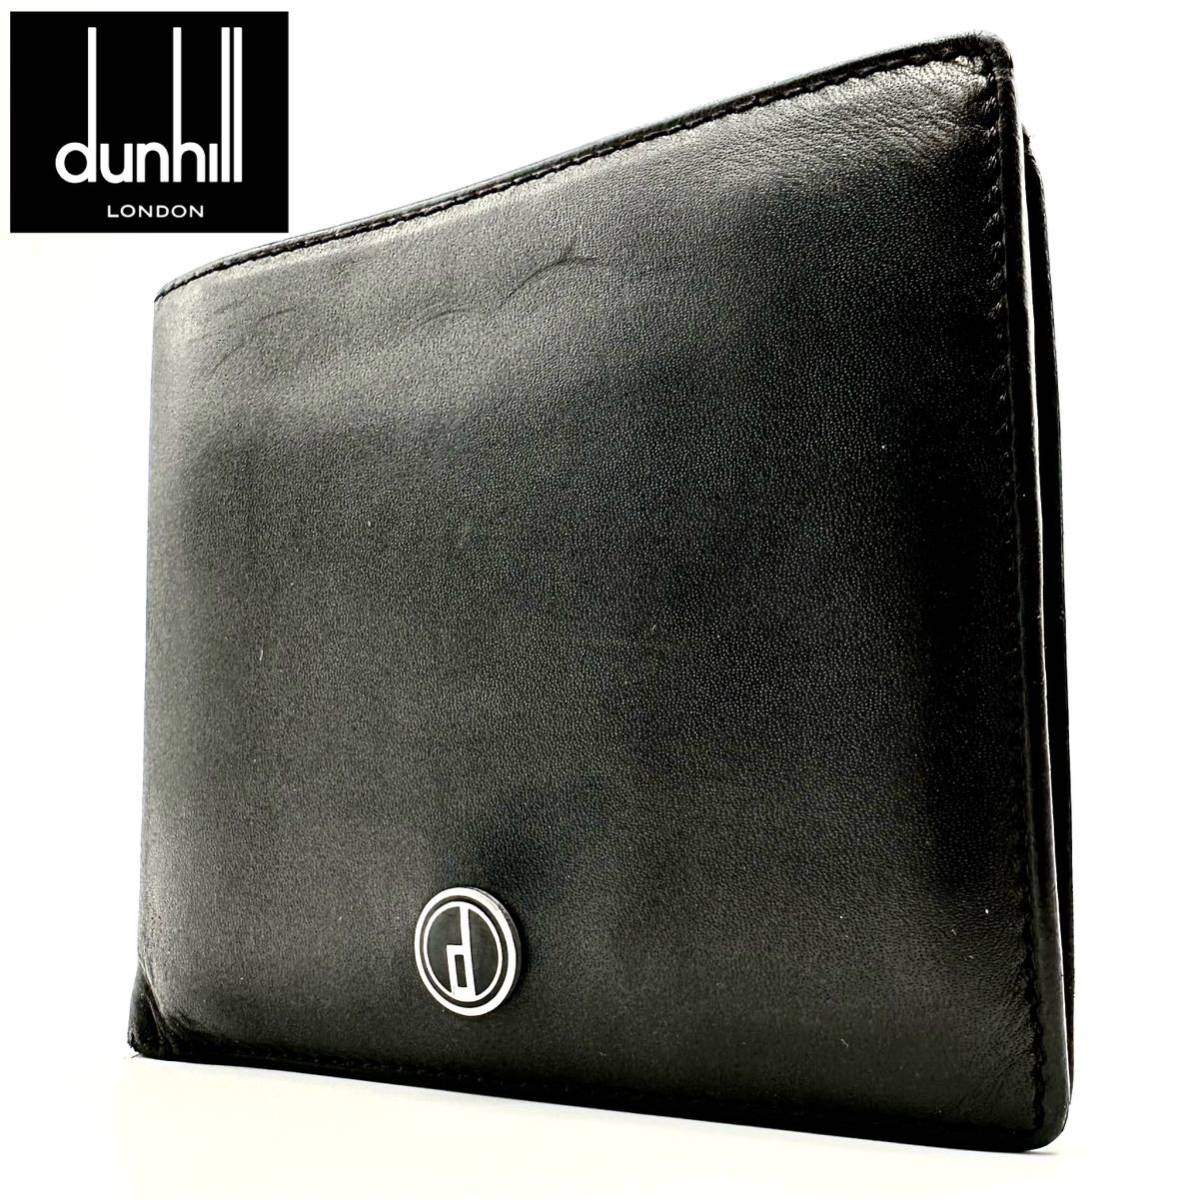 【極美品】ダンヒル dunhill 財布 二つ折り財布 ウォレット サイフ wallet 折りたたみ コンパクト ミニ ブラック 黒 レザー 革